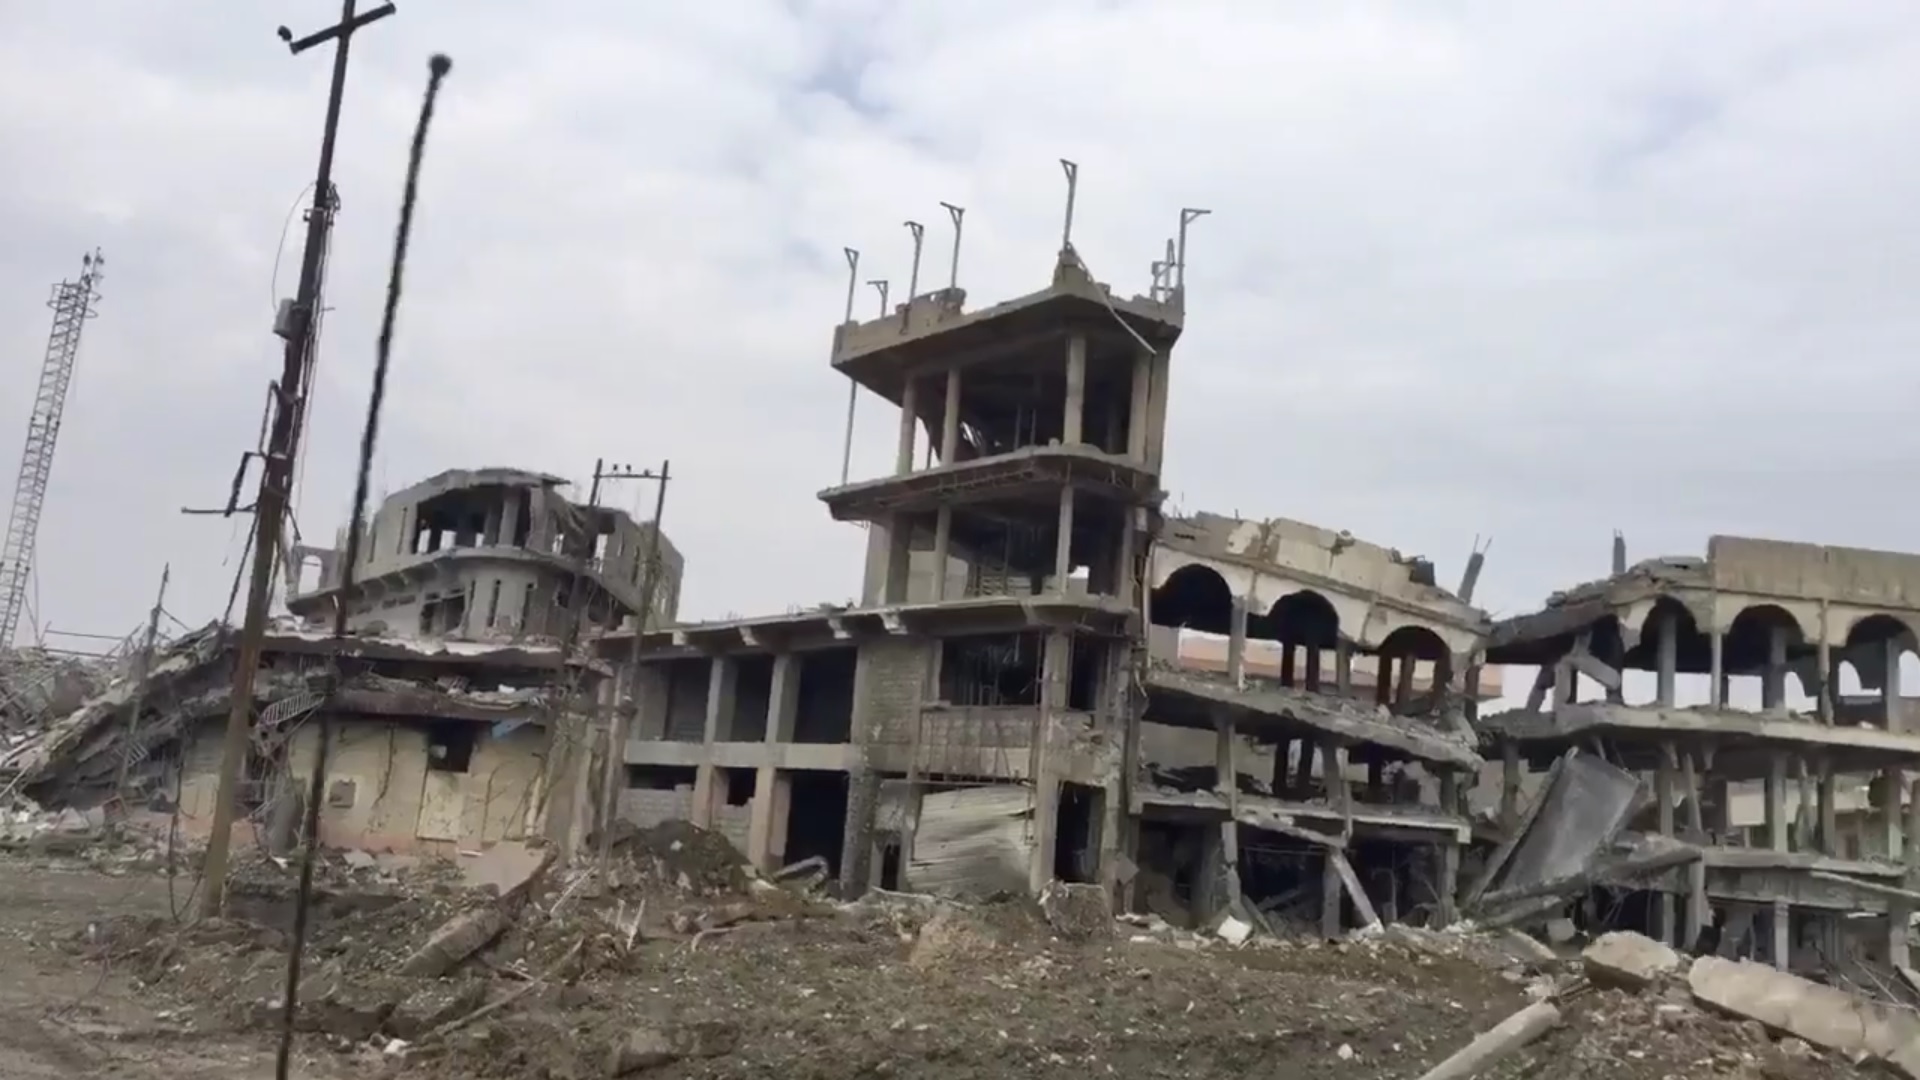 Zona destruida en el oeste de Mosul, Irak; denuncian que hay decenas de personas civiles sepultadas por enfrentamientos (Twitter @yamphoto)